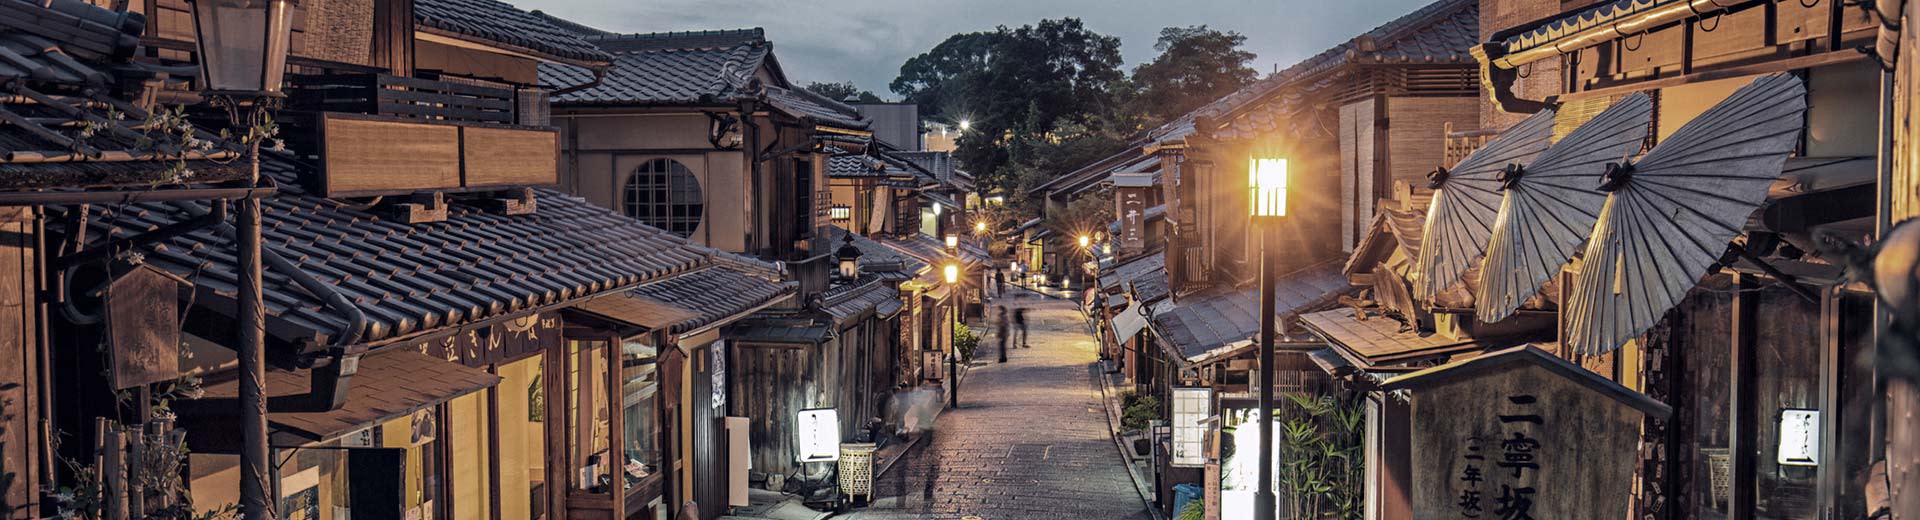 En la luz de la tarde, una calle estrecha llena de edificios antiguos con fachadas de madera en Kioto.